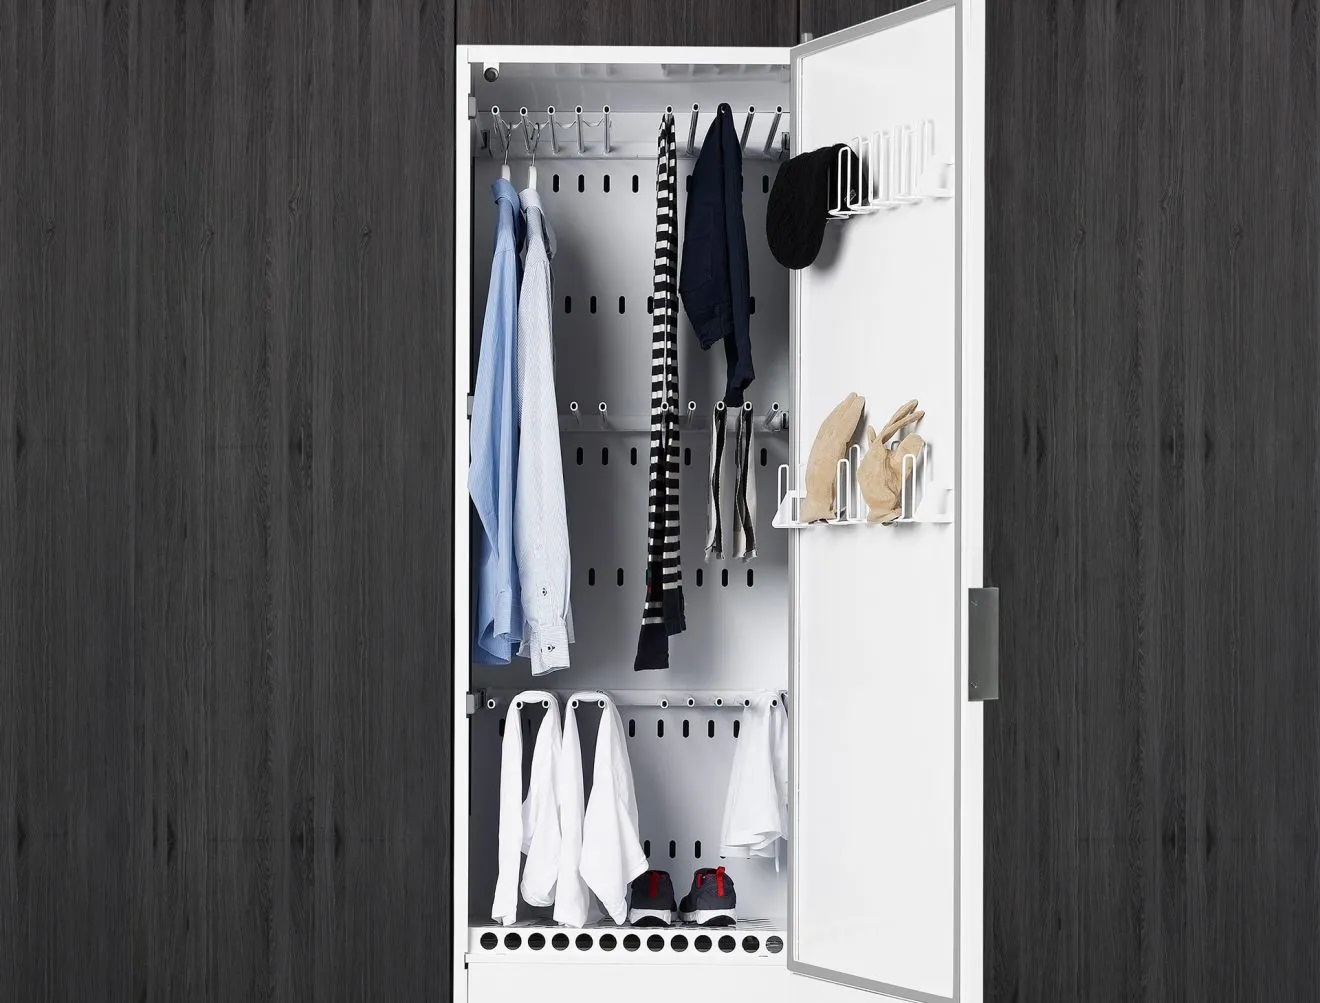 Вентилируемый сушильный шкаф для верхней одежды и обуви